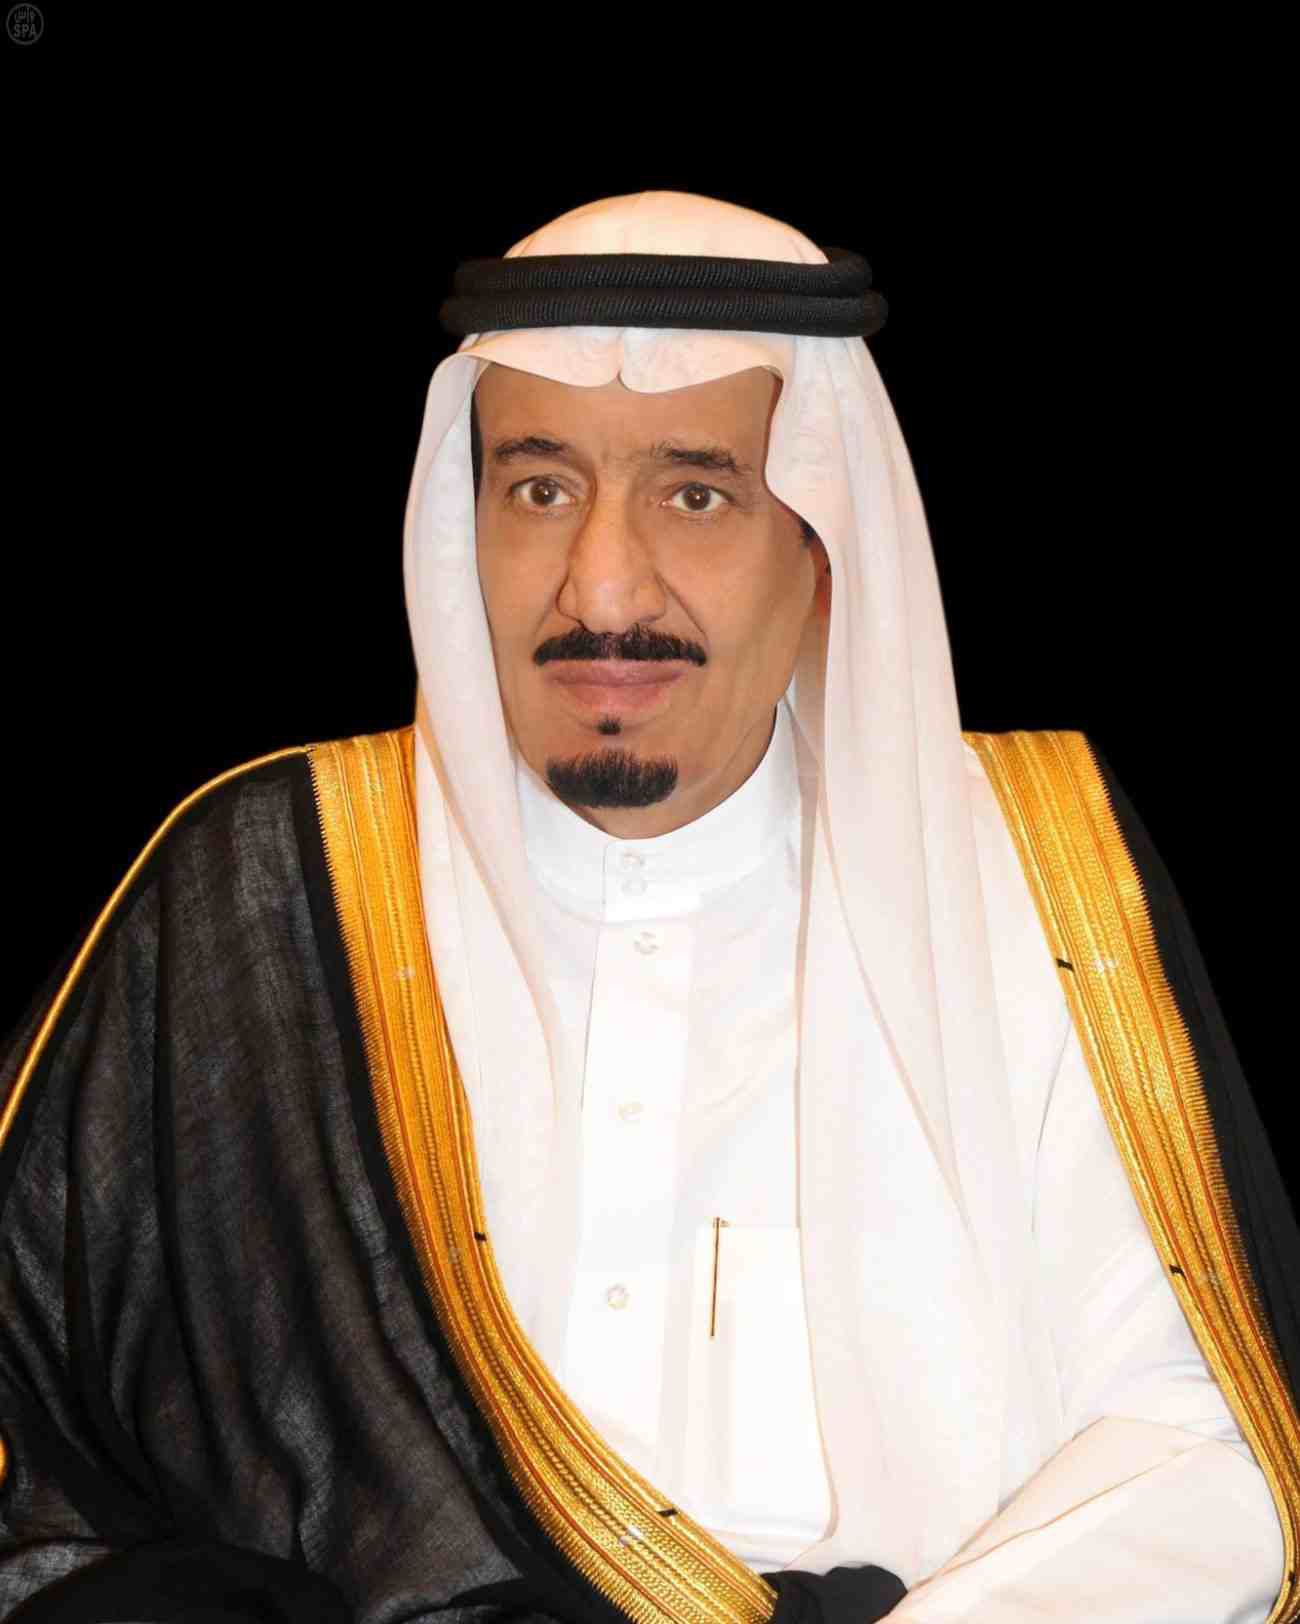 د. العيسى يشكر قيادة المملكة العربية السعودية بمناسبة الرعاية الكريمة للمؤتمر